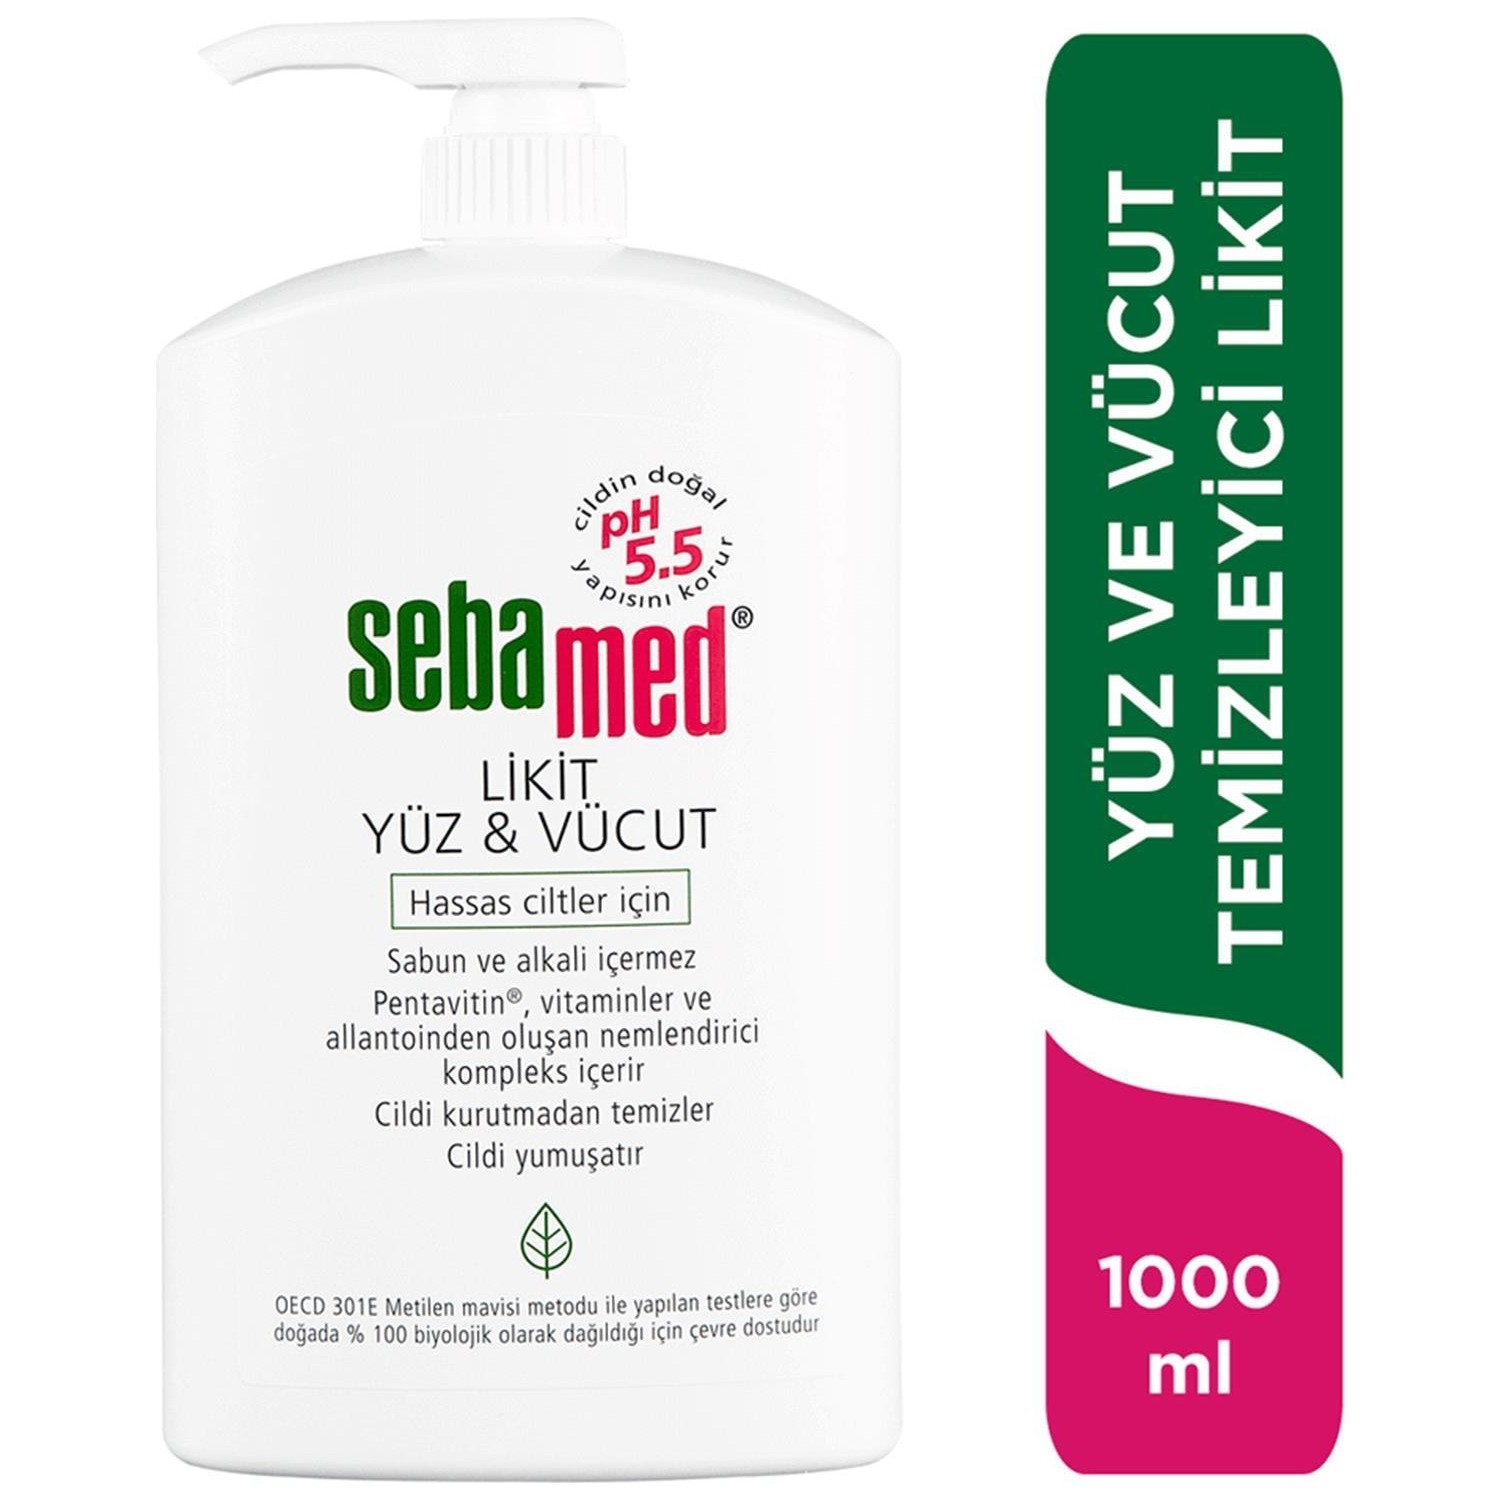 Очищающее средство Sebamed для лица и тела, 1000 мл очищающее средство для лица и тела masil 21 probiotics skin wash 500 мл